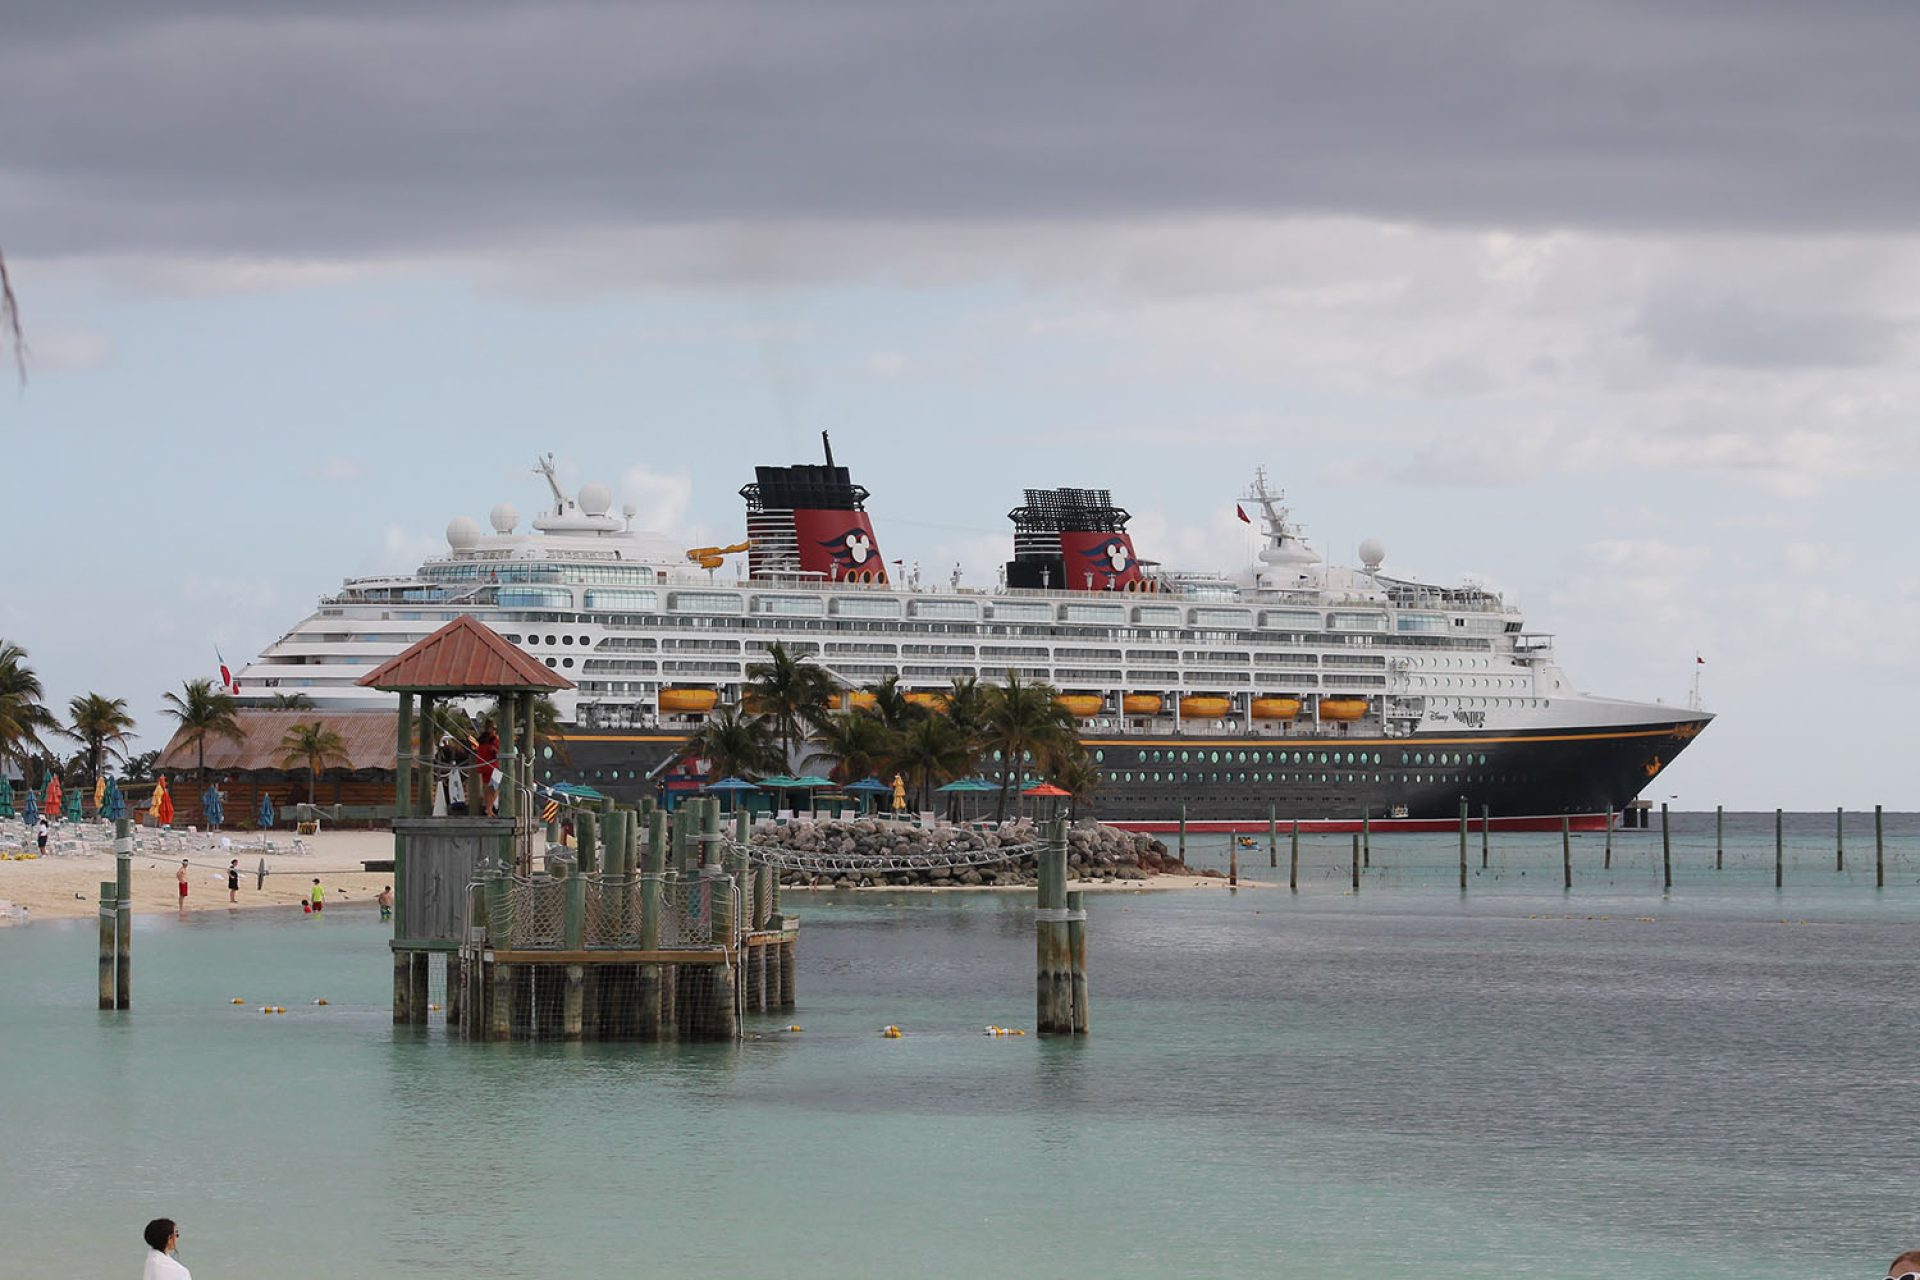 Disney Wonder, docked at Disney's Private Island Castaway Cay (Bahamas)